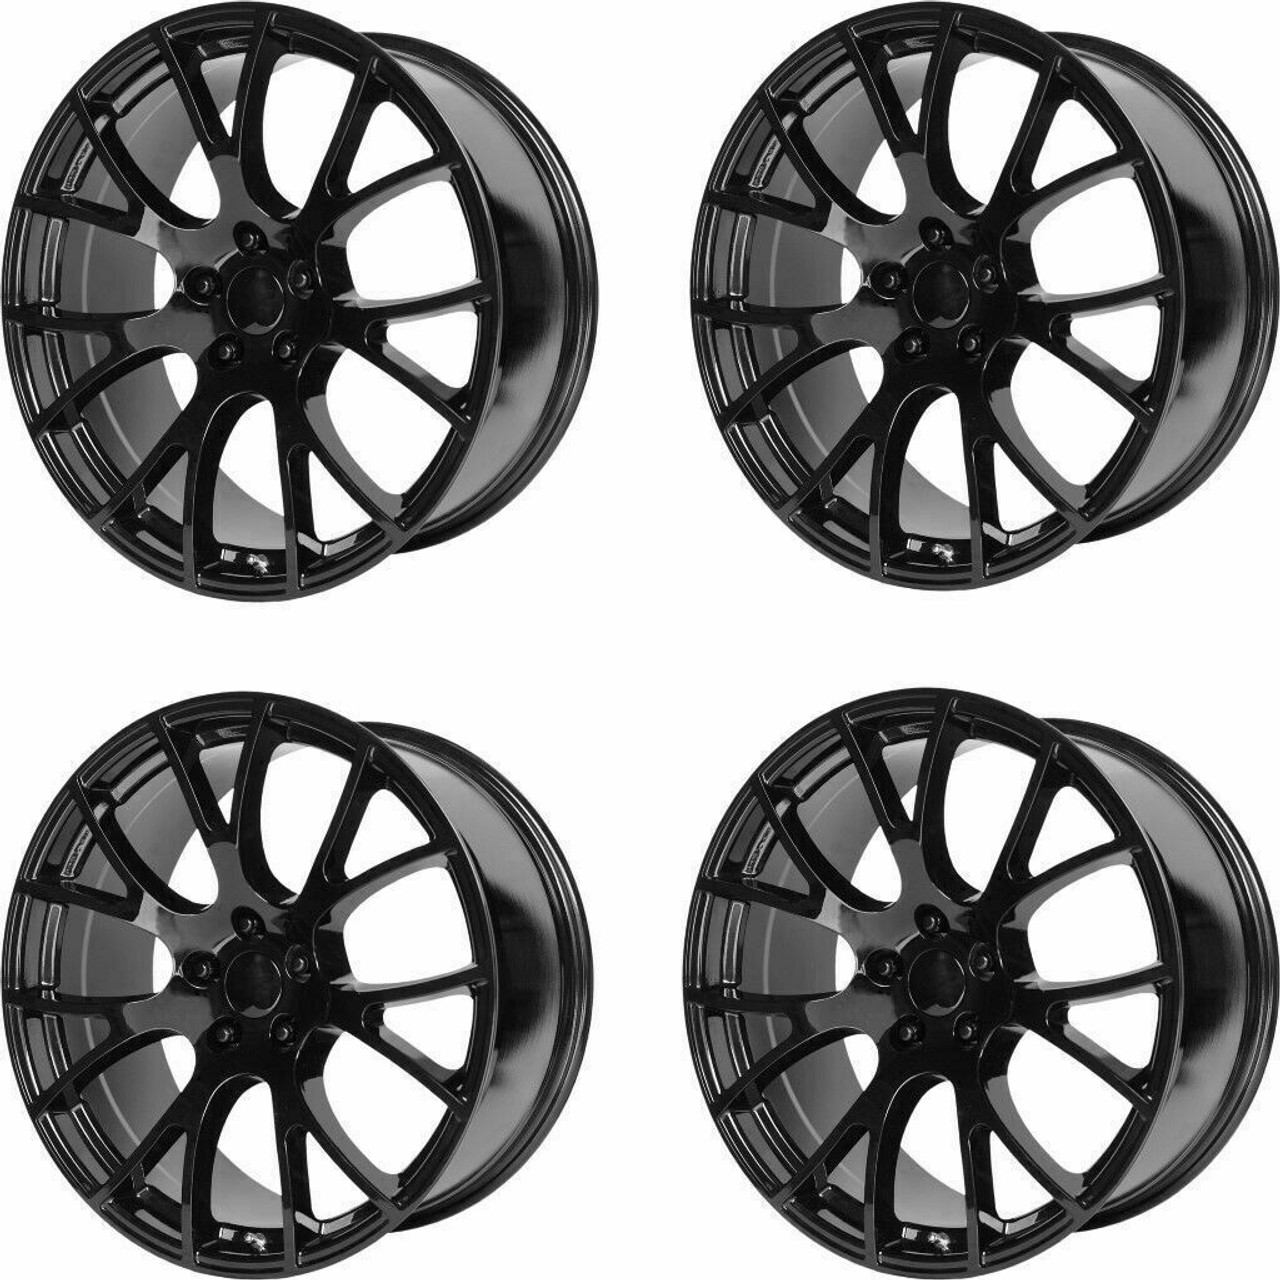 Set 4 Performance Replicas PR161 22x9.5 5x5 Gloss Black Wheels 22" 35mm Rims